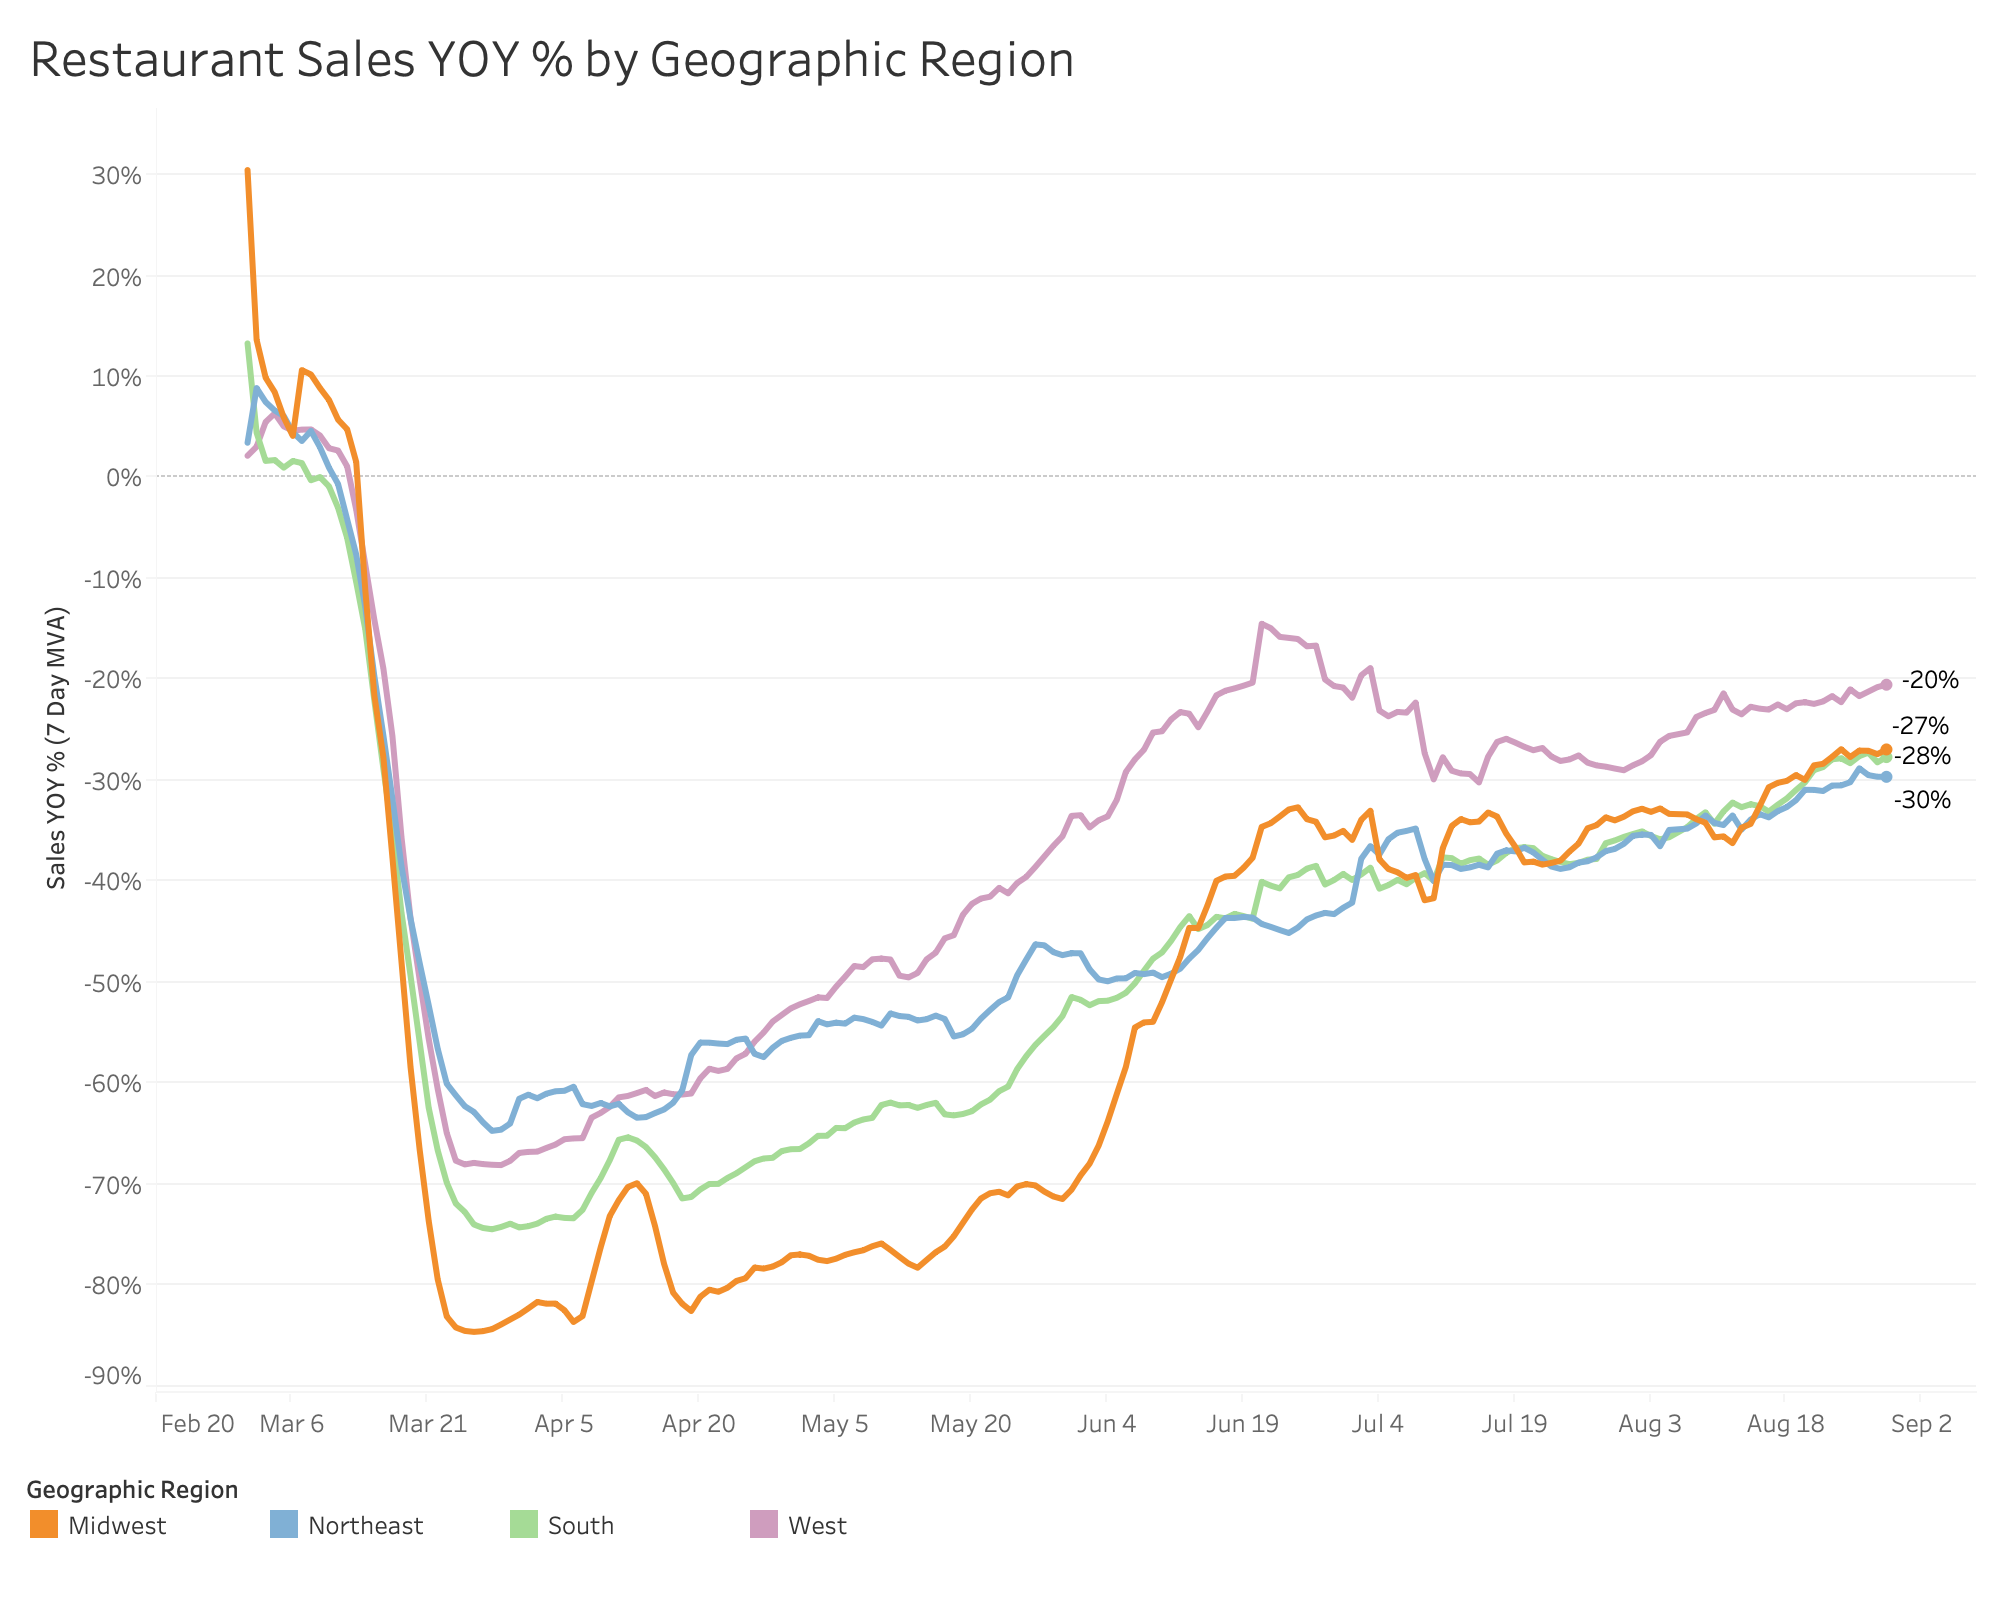 YOY Sales by Geographic Region